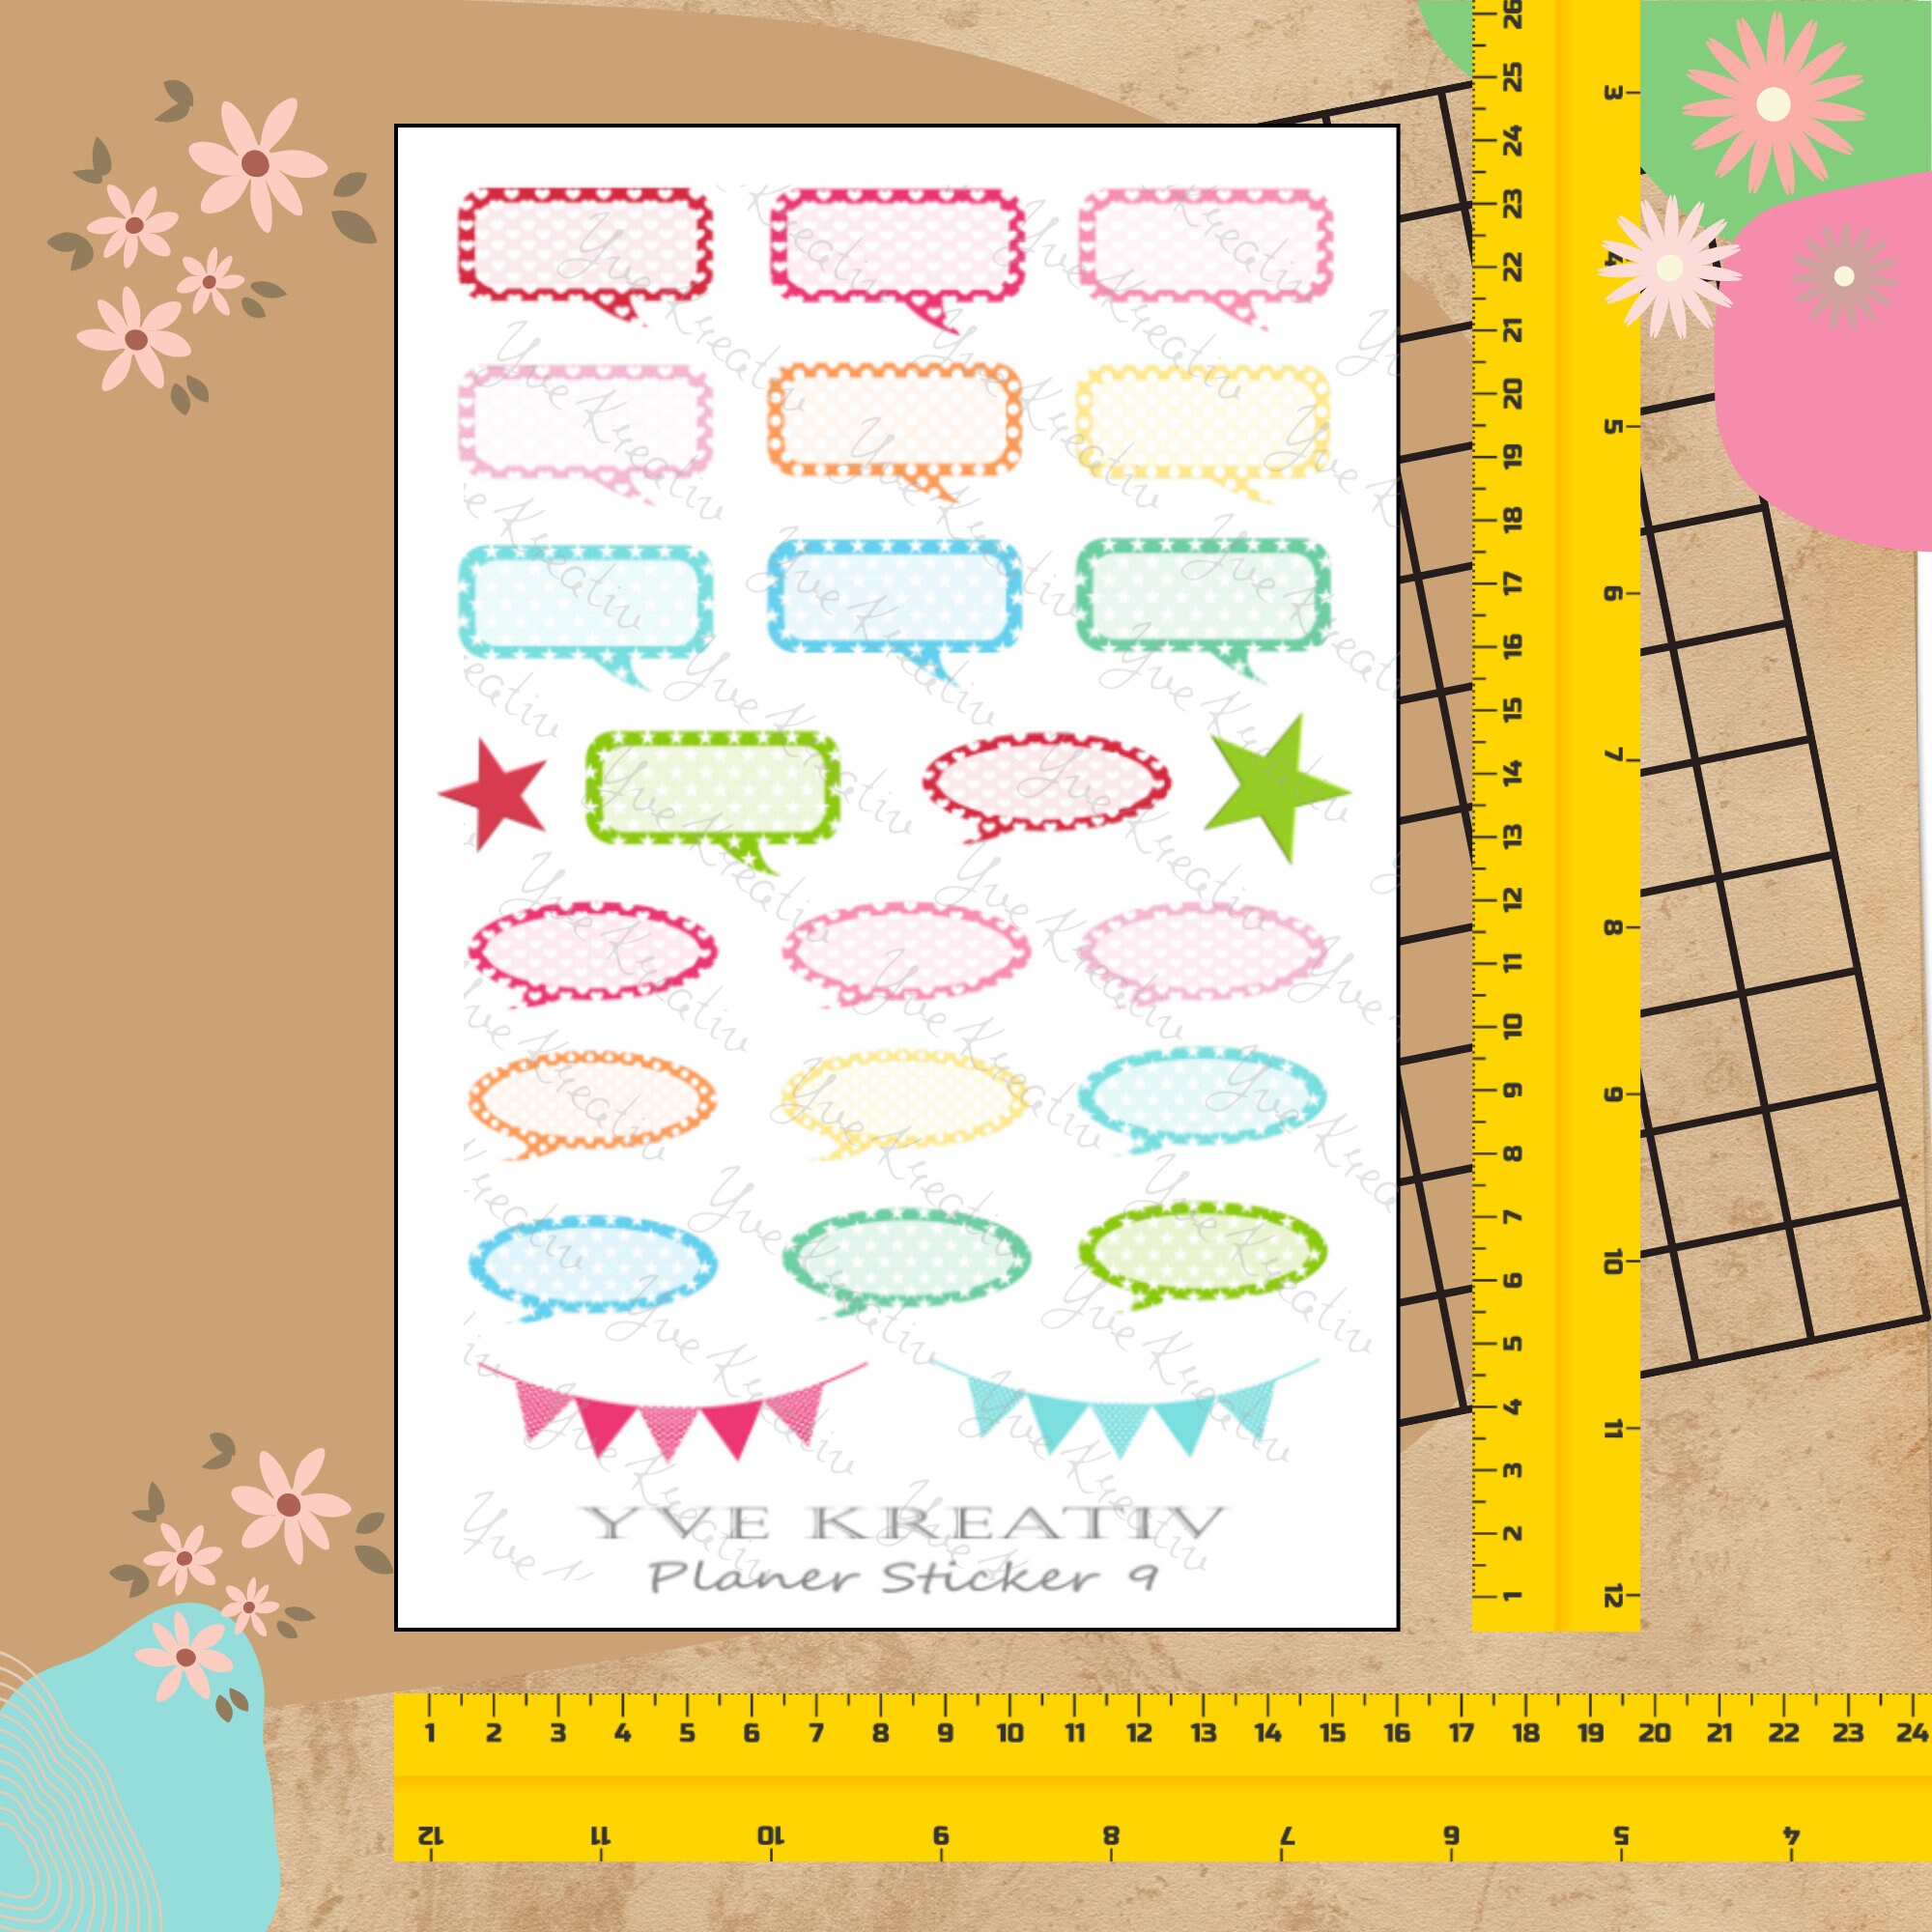 Sticker Planer | über 20 Aufkleber Sticker Bogen Set Stickerbogen  -  Wochenplaner Kalender Bullet Journaling